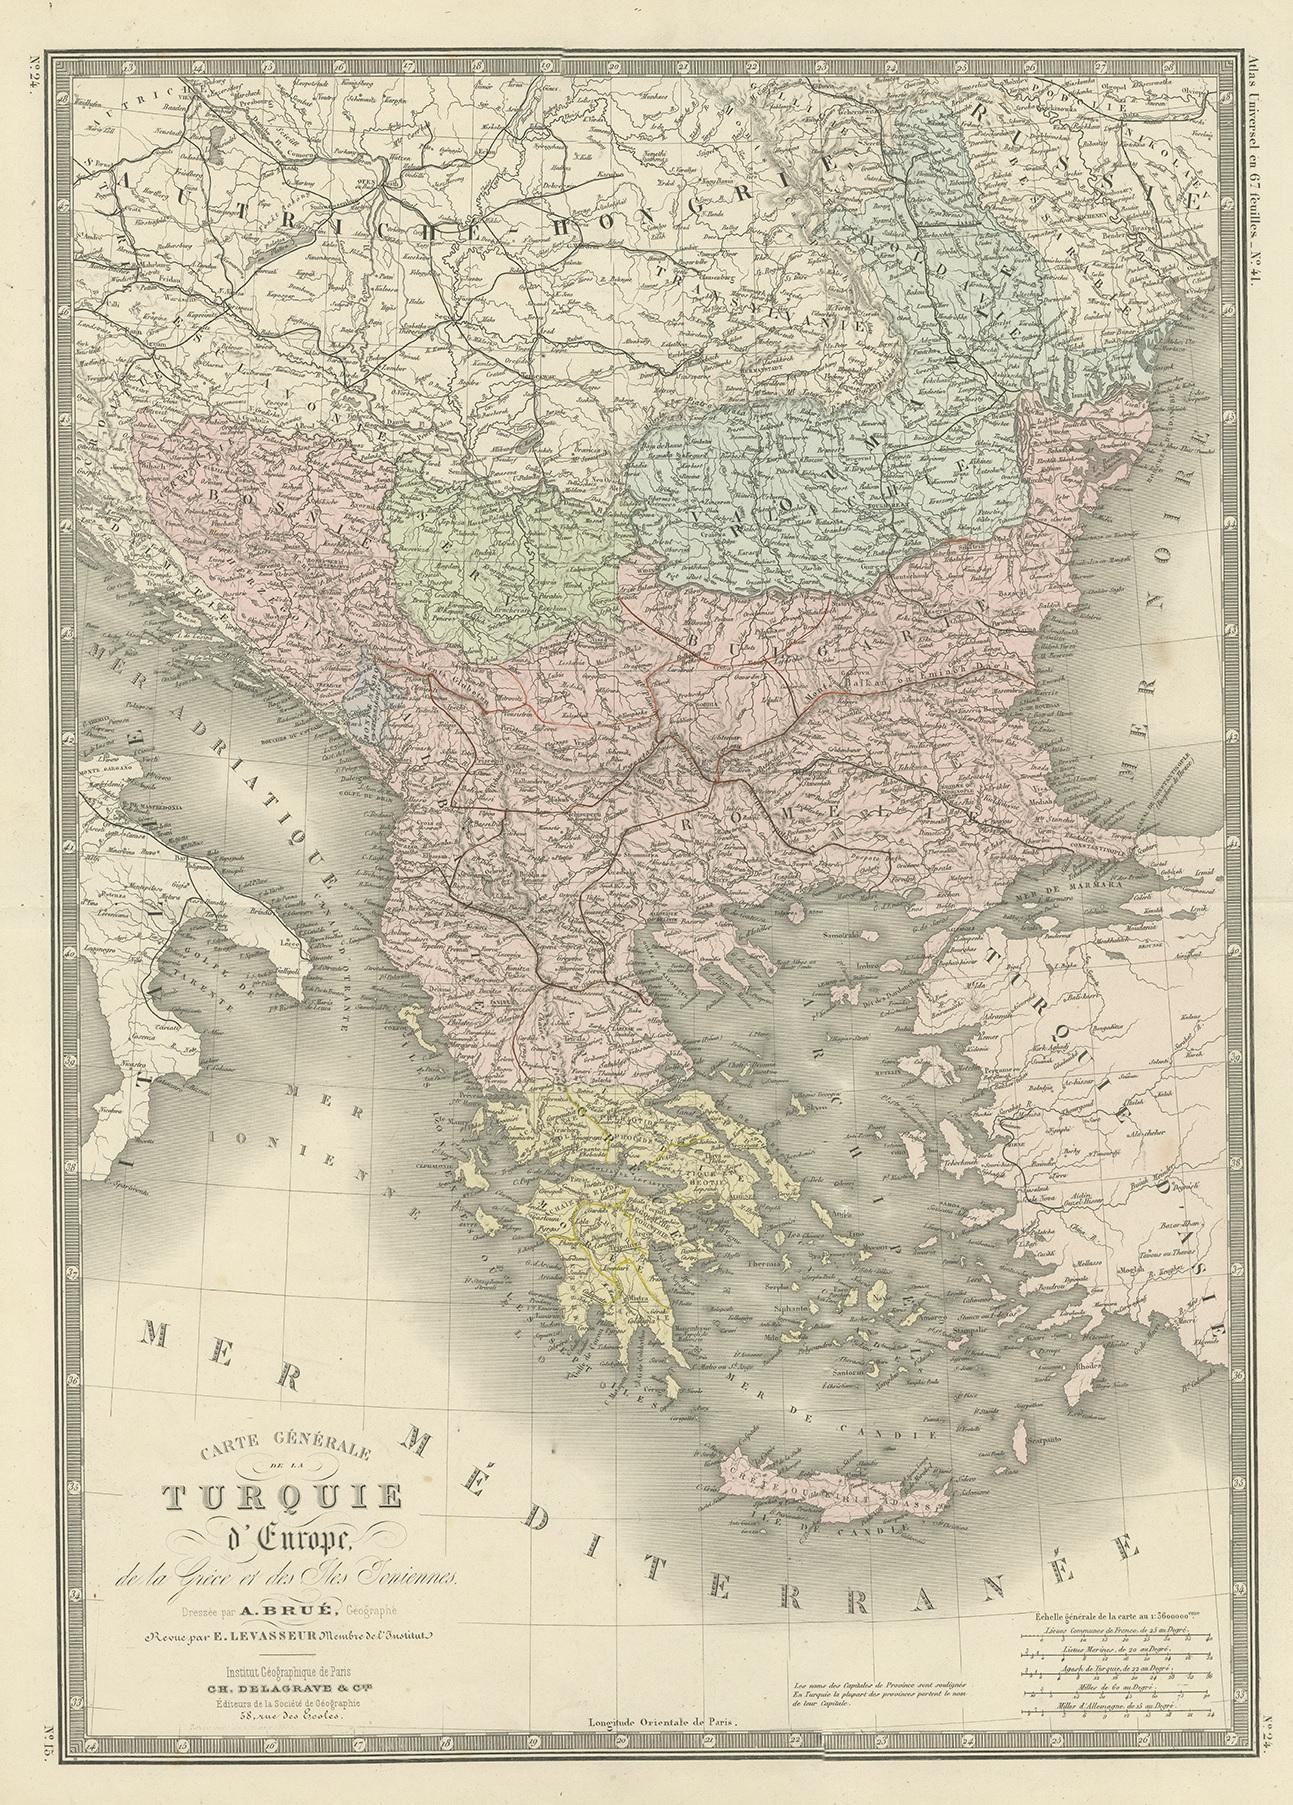 Antique map titled 'Carte générale de la Turquie d'Europe'. Large map of Turkey in Europe. This map originates from 'Atlas de Géographie Moderne Physique et Politique' by A. Levasseur. Published 1875.